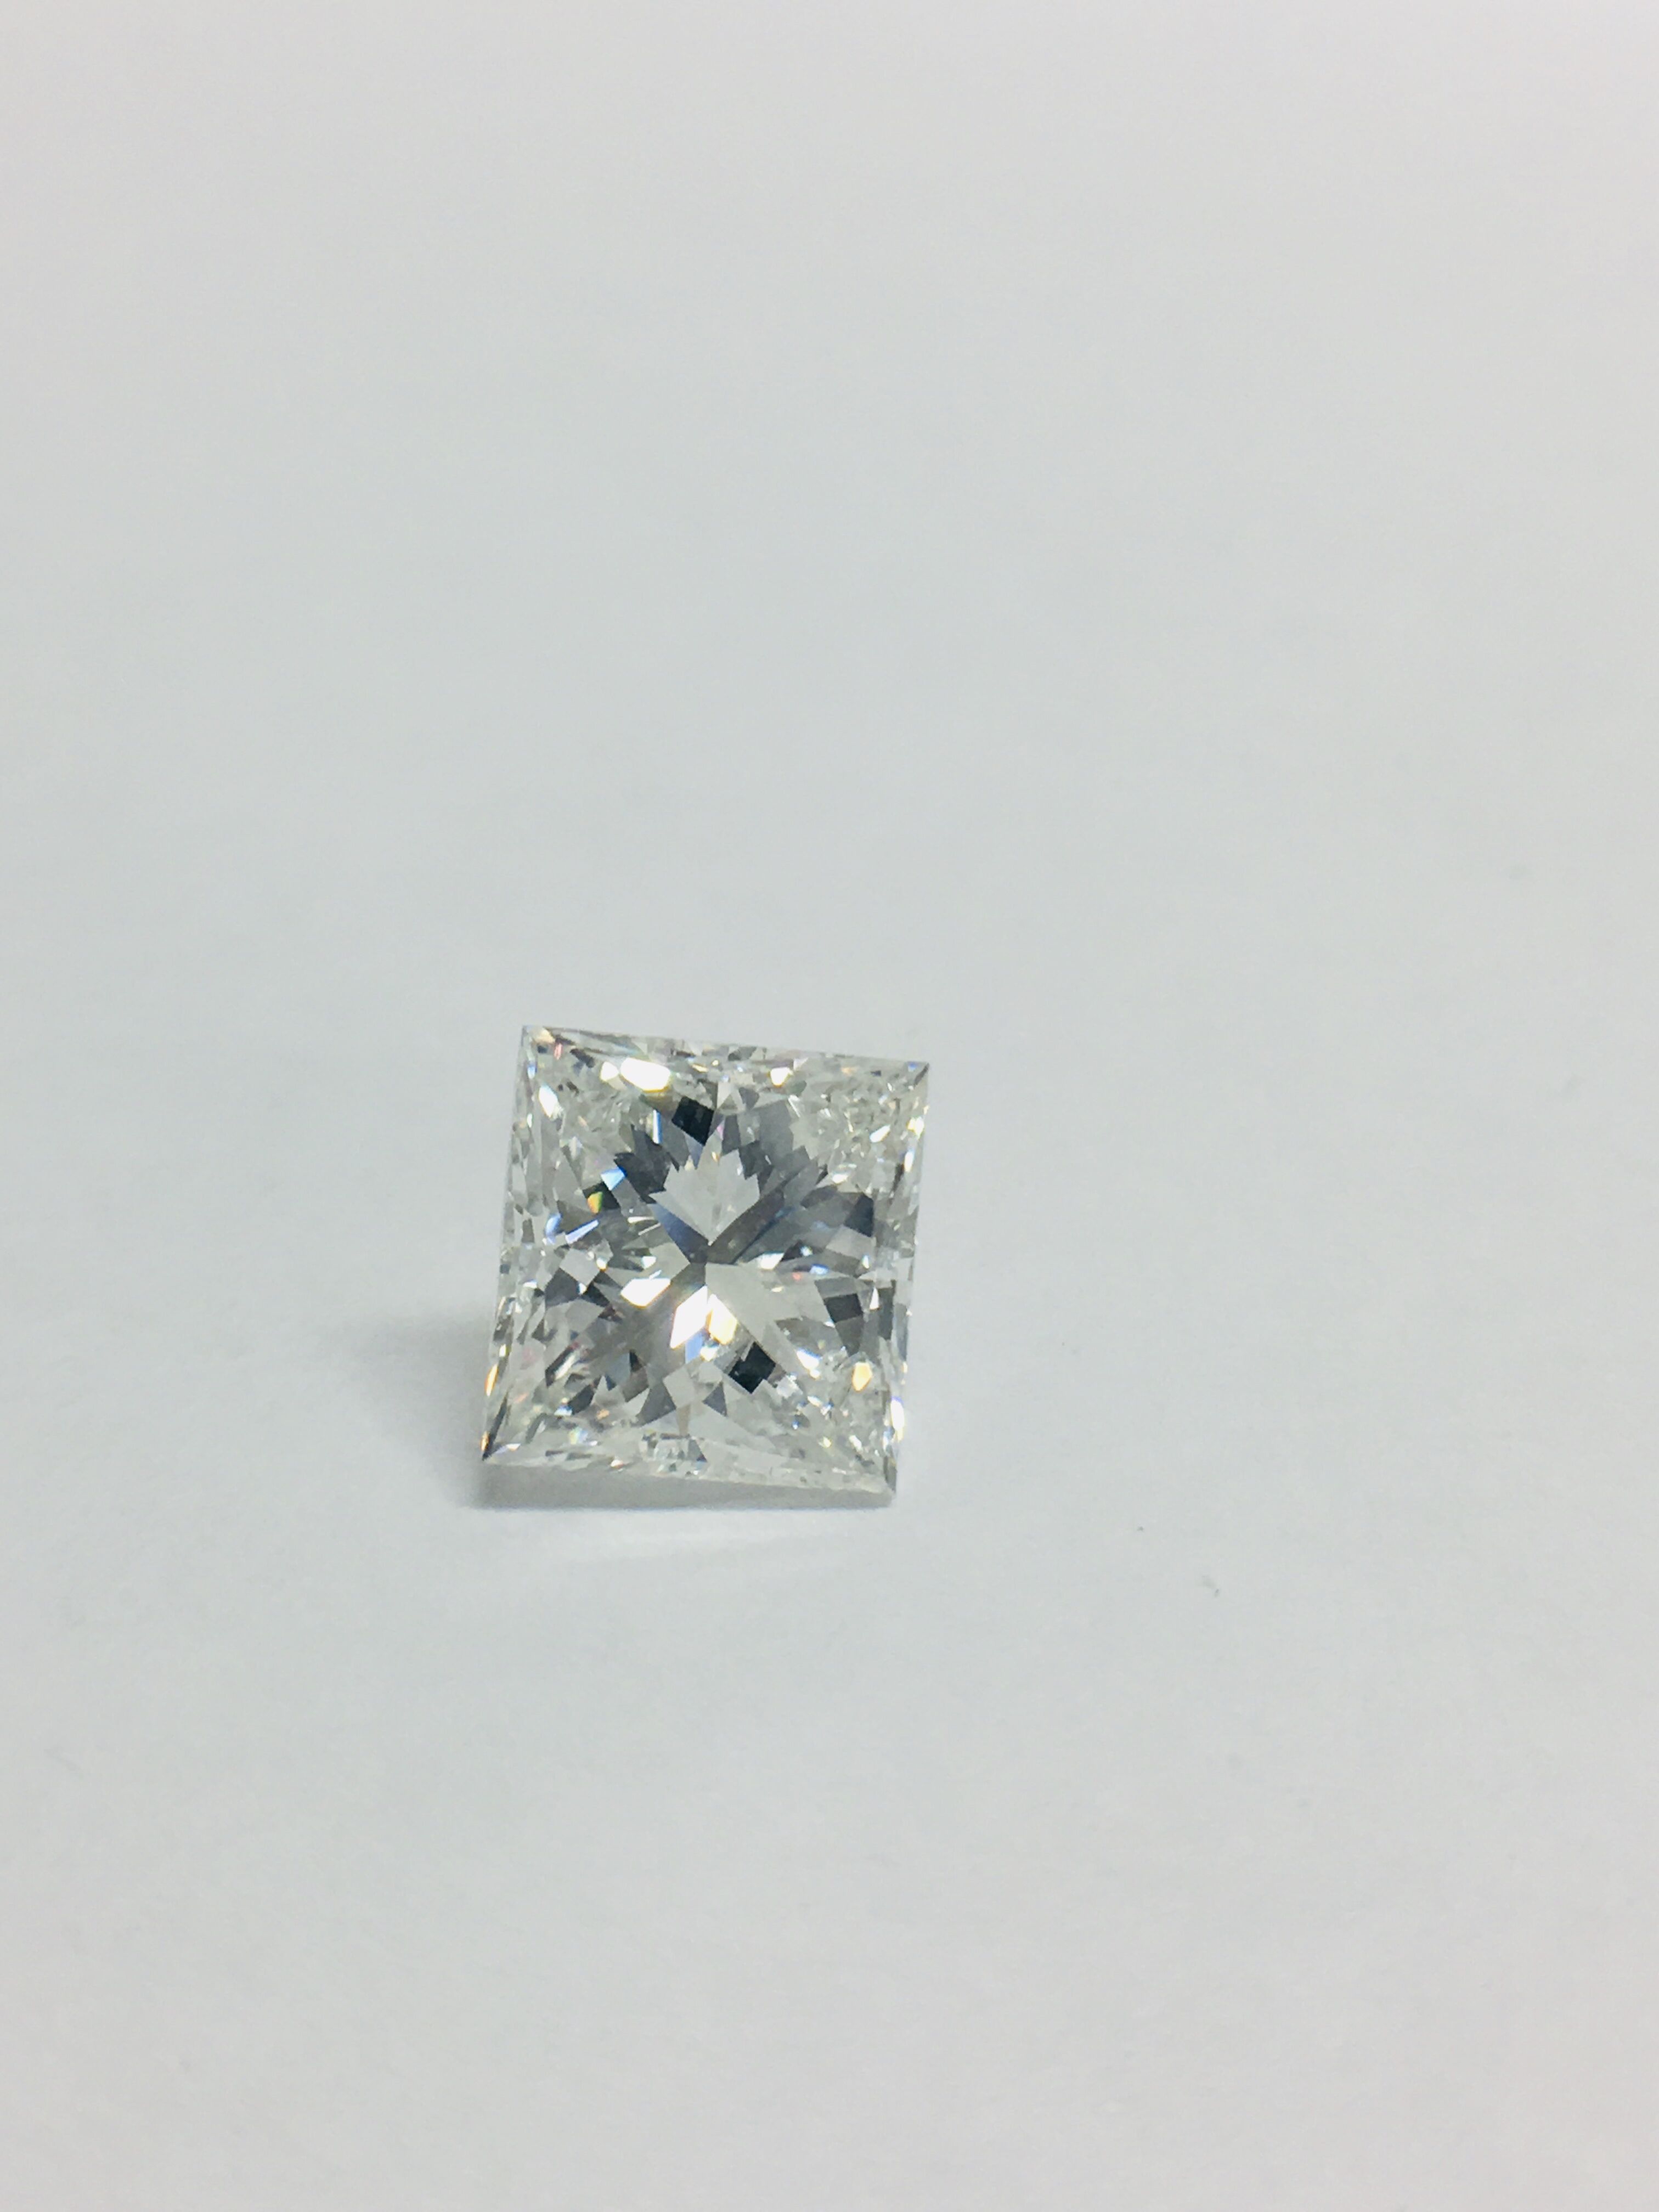 1.95ct Princess cut Diamond - Image 6 of 42